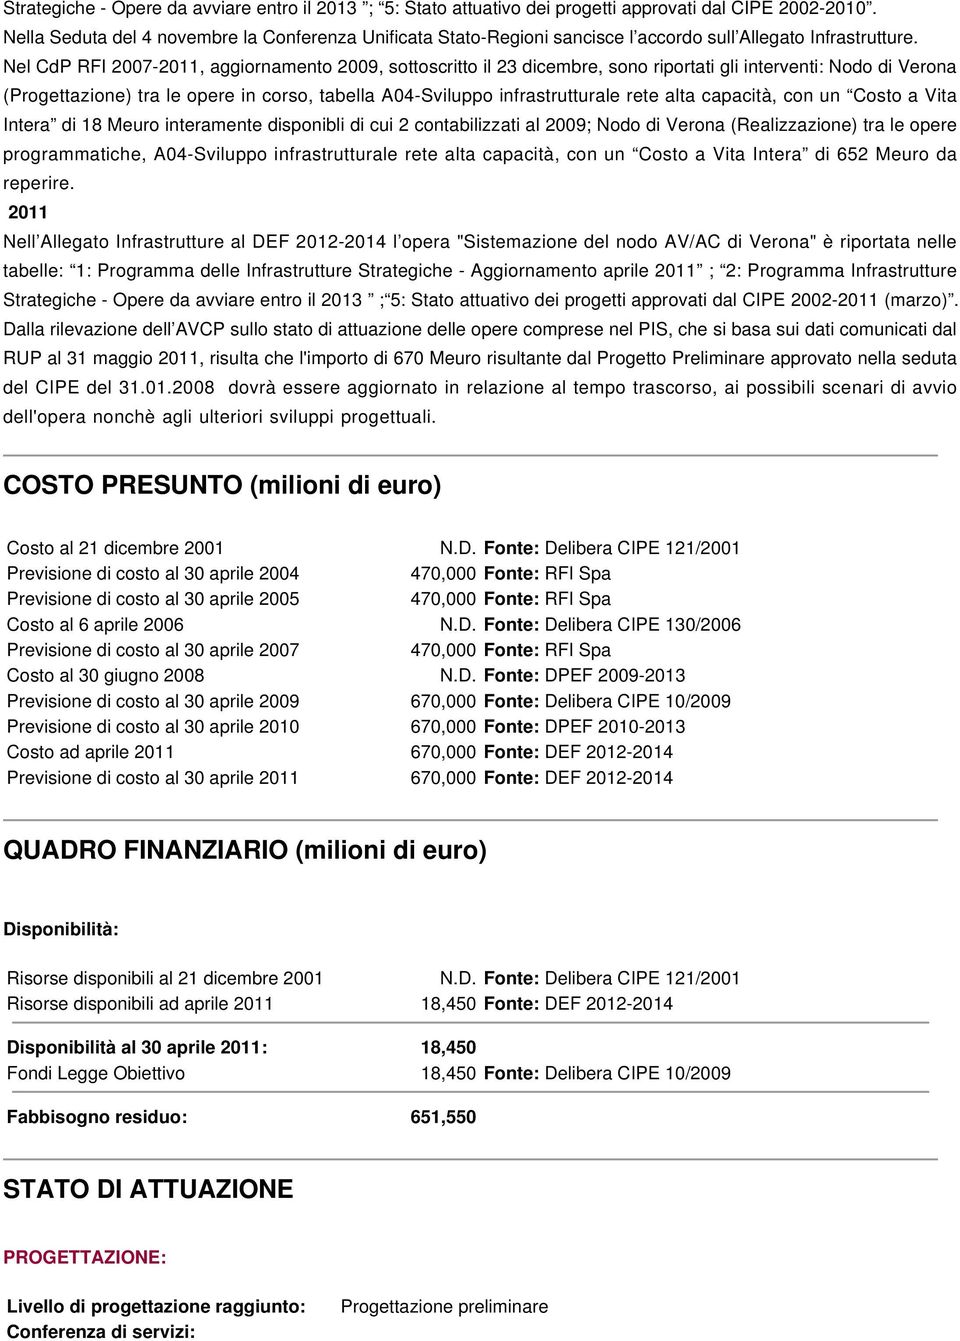 Nel CdP RFI 2007-2011, aggiornamento 2009, sottoscritto il 23 dicembre, sono riportati gli interventi: Nodo di Verona (Progettazione) tra le opere in corso, tabella A04-Sviluppo infrastrutturale rete